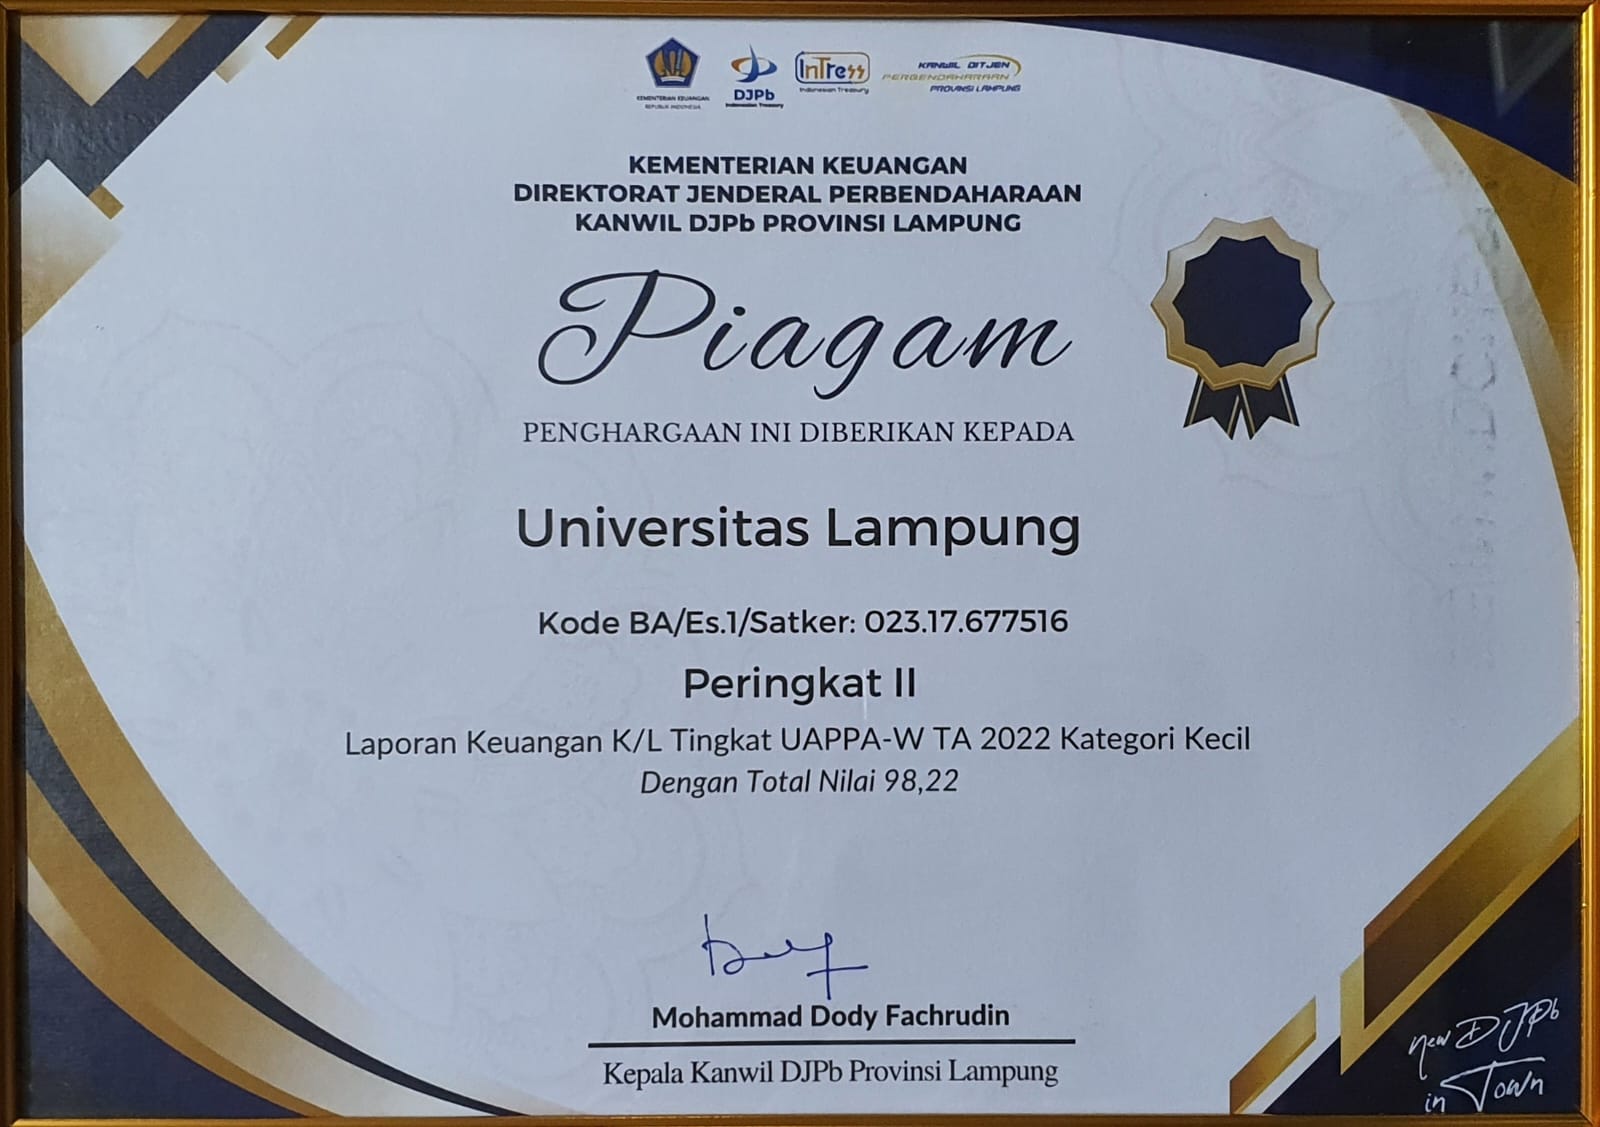 Piagam Penghargaan dari Kanwil DJPb Provinsi Lampung atas LK Tingkat UAPPA-W TA 2022 Peringkat II